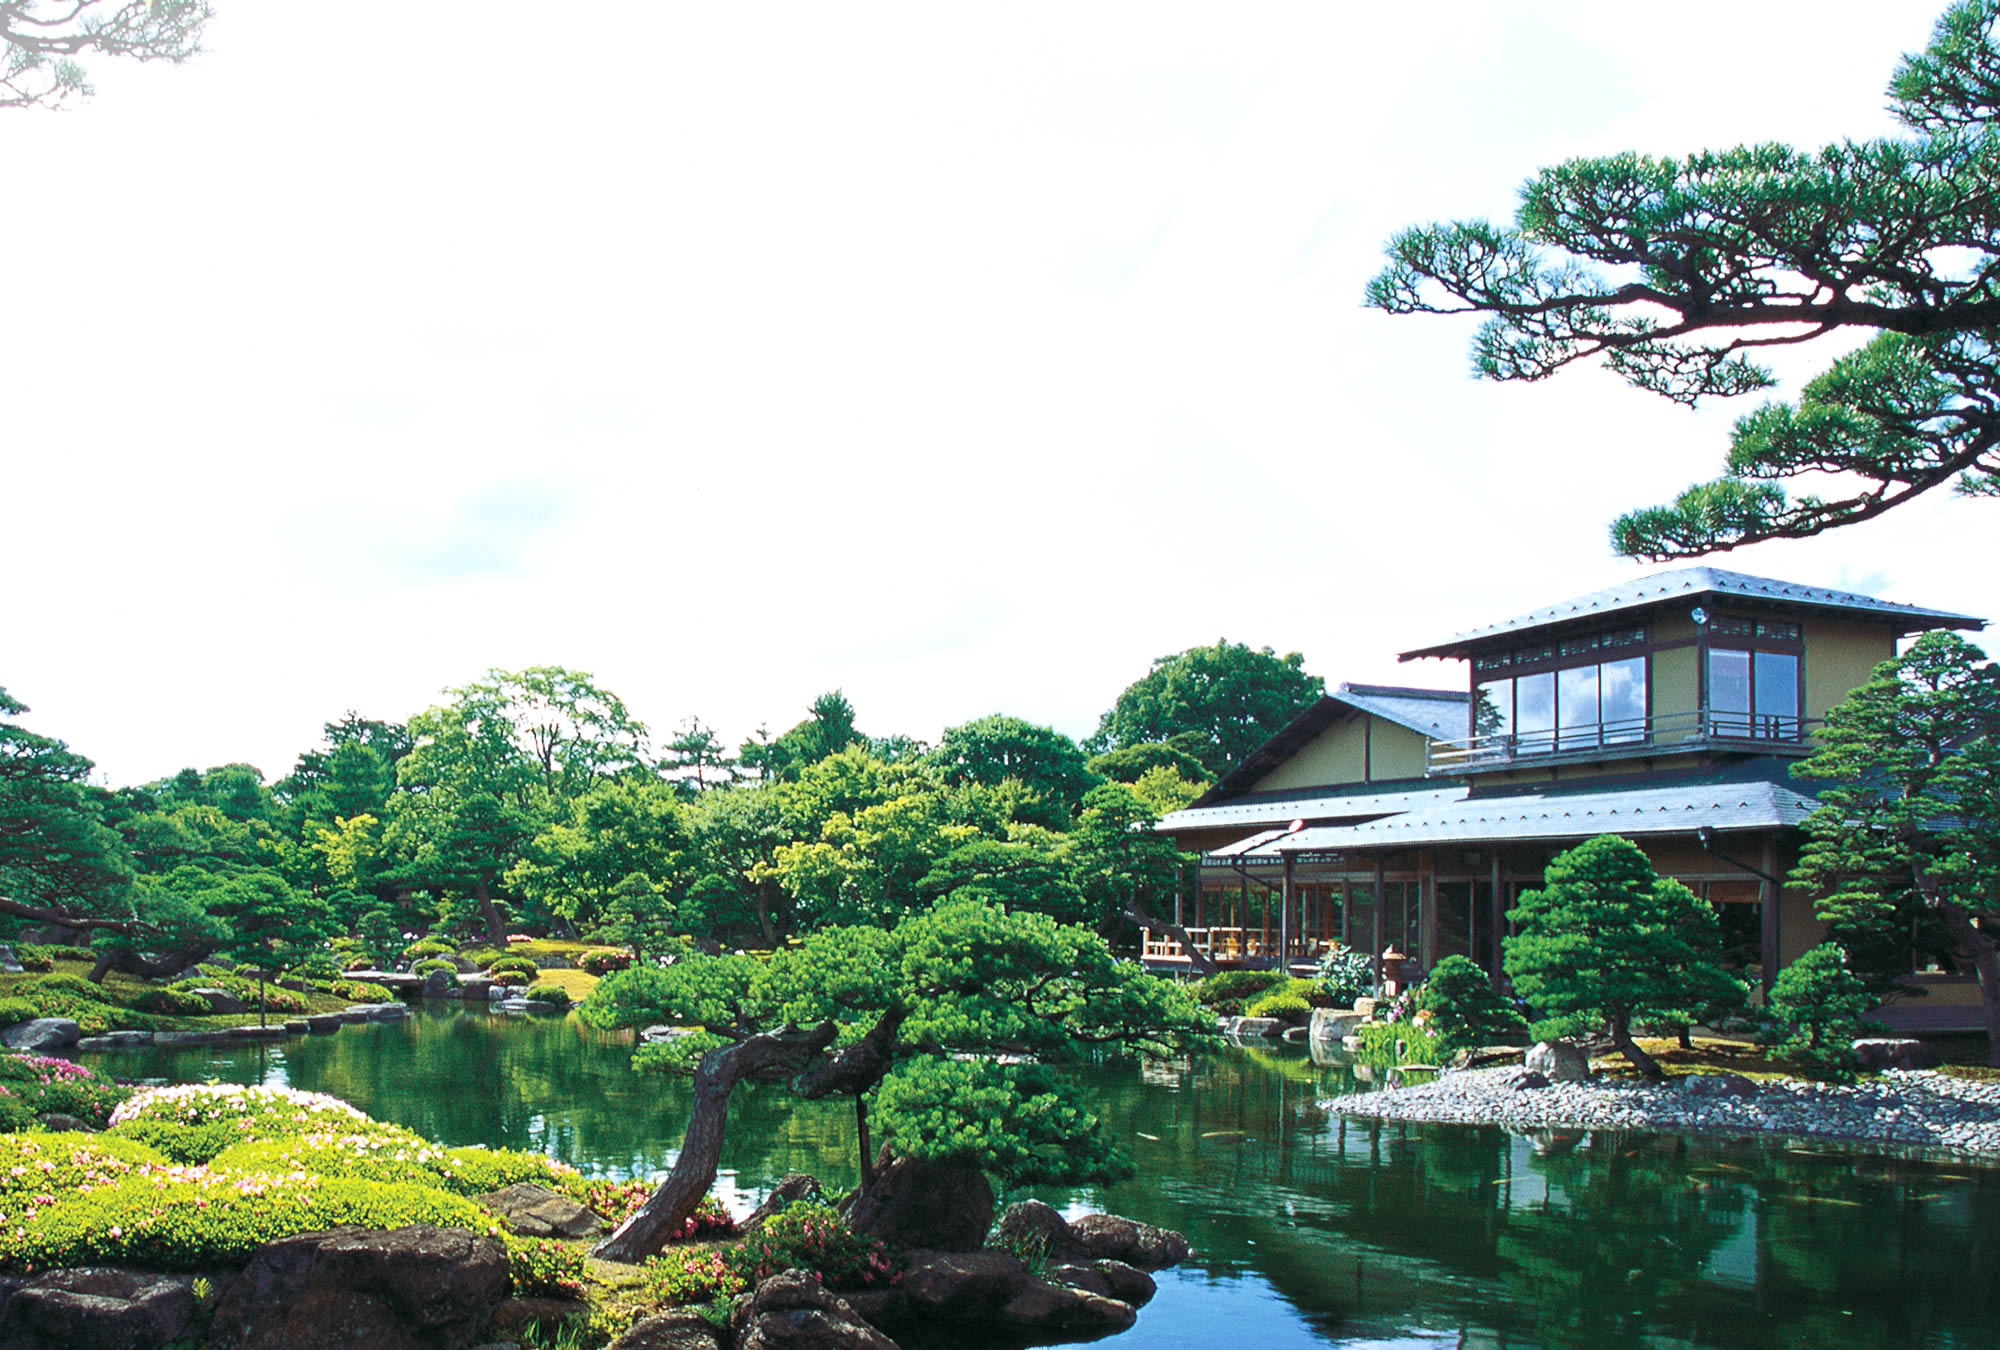 日本庭園 由志園 公式サイト 牡丹と高麗人蔘の里